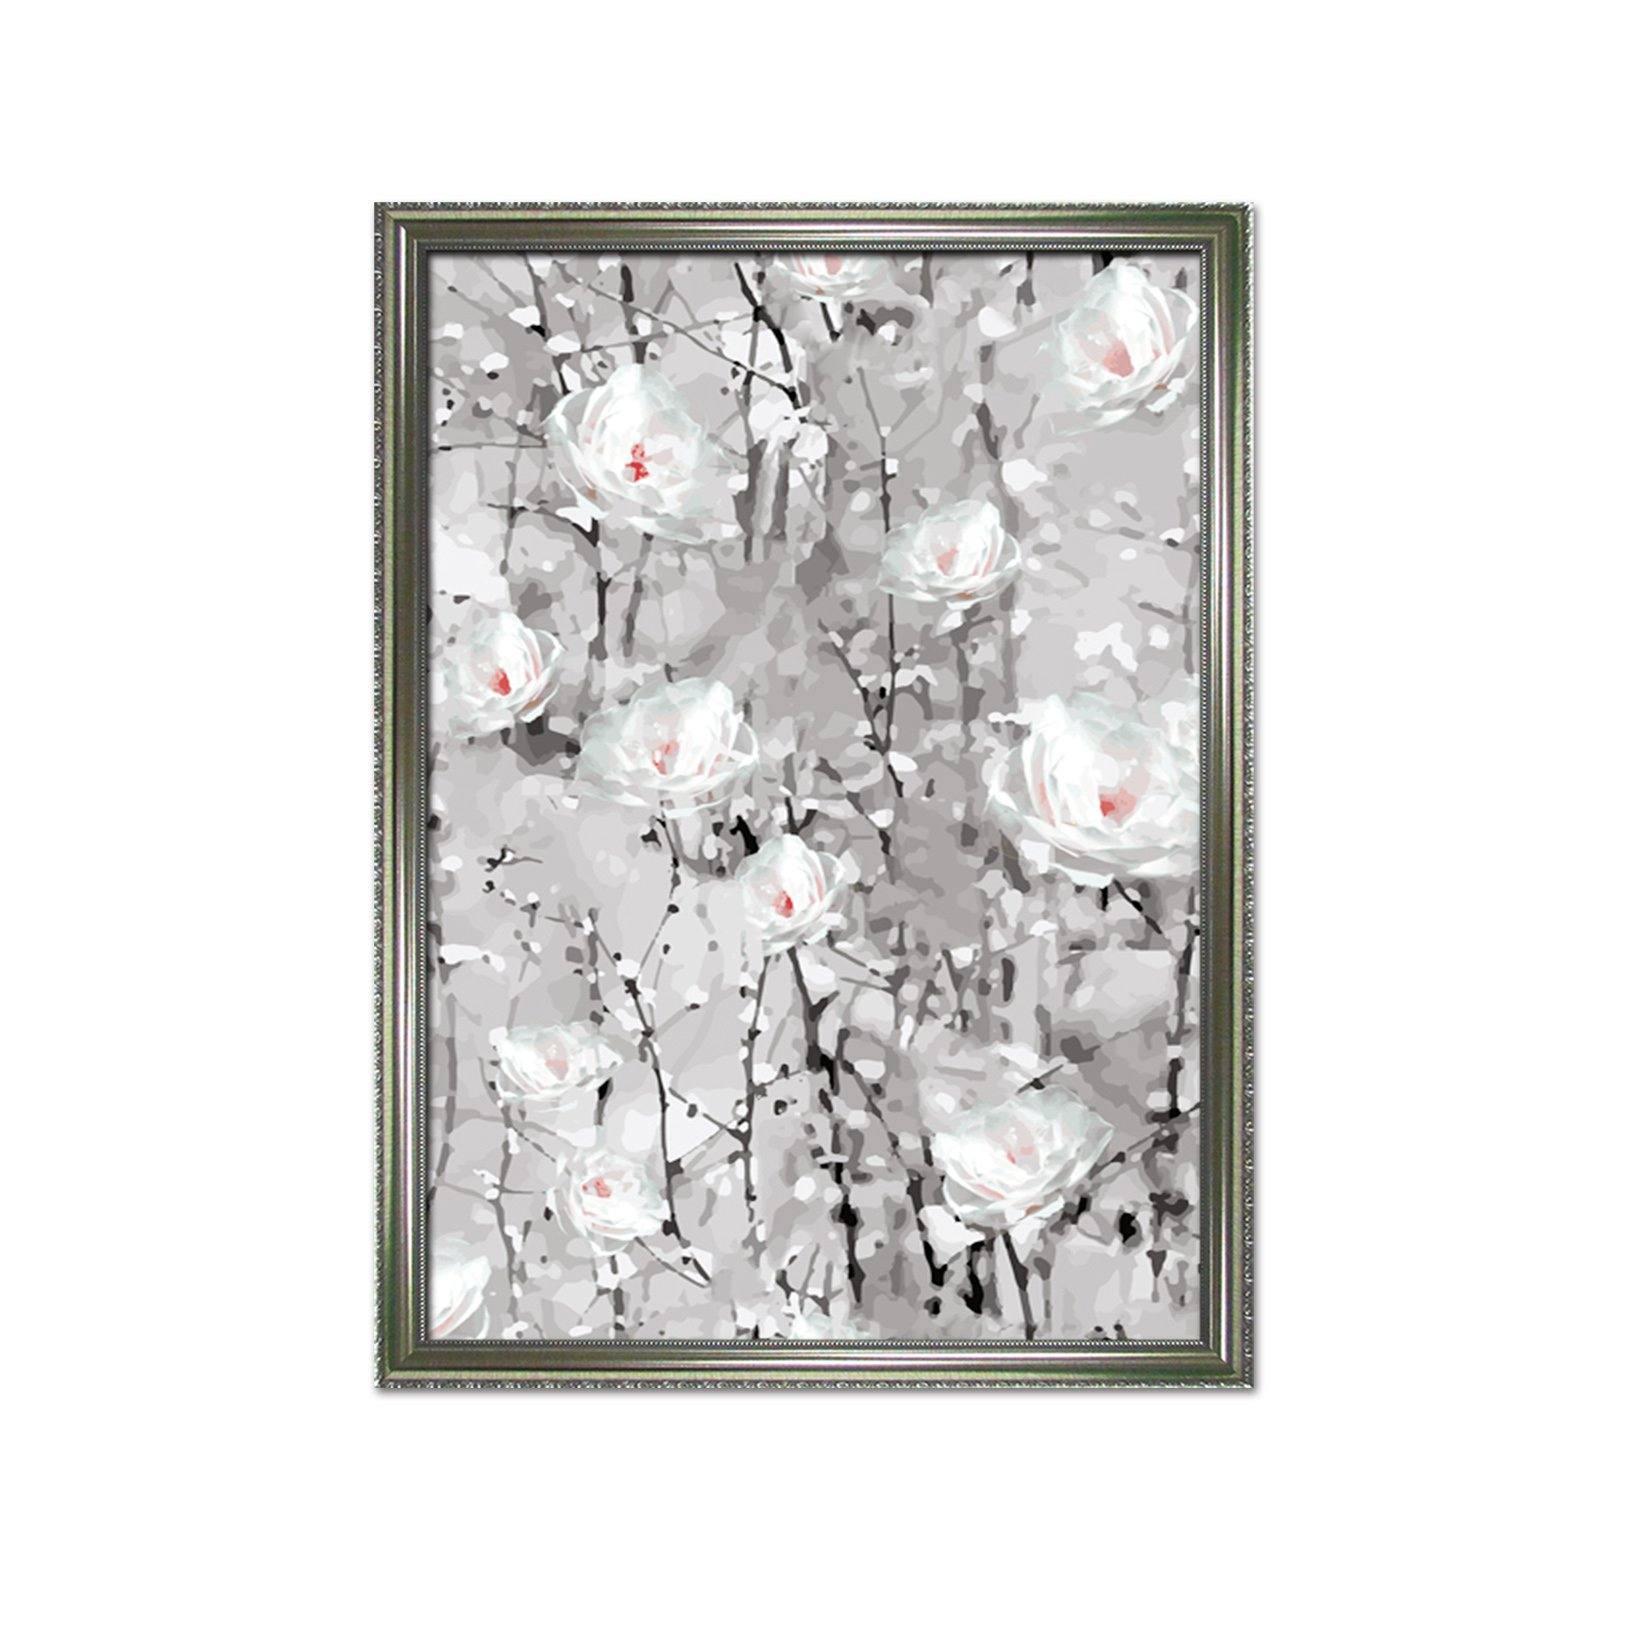 3D White Flower 071 Fake Framed Print Painting Wallpaper AJ Creativity Home 